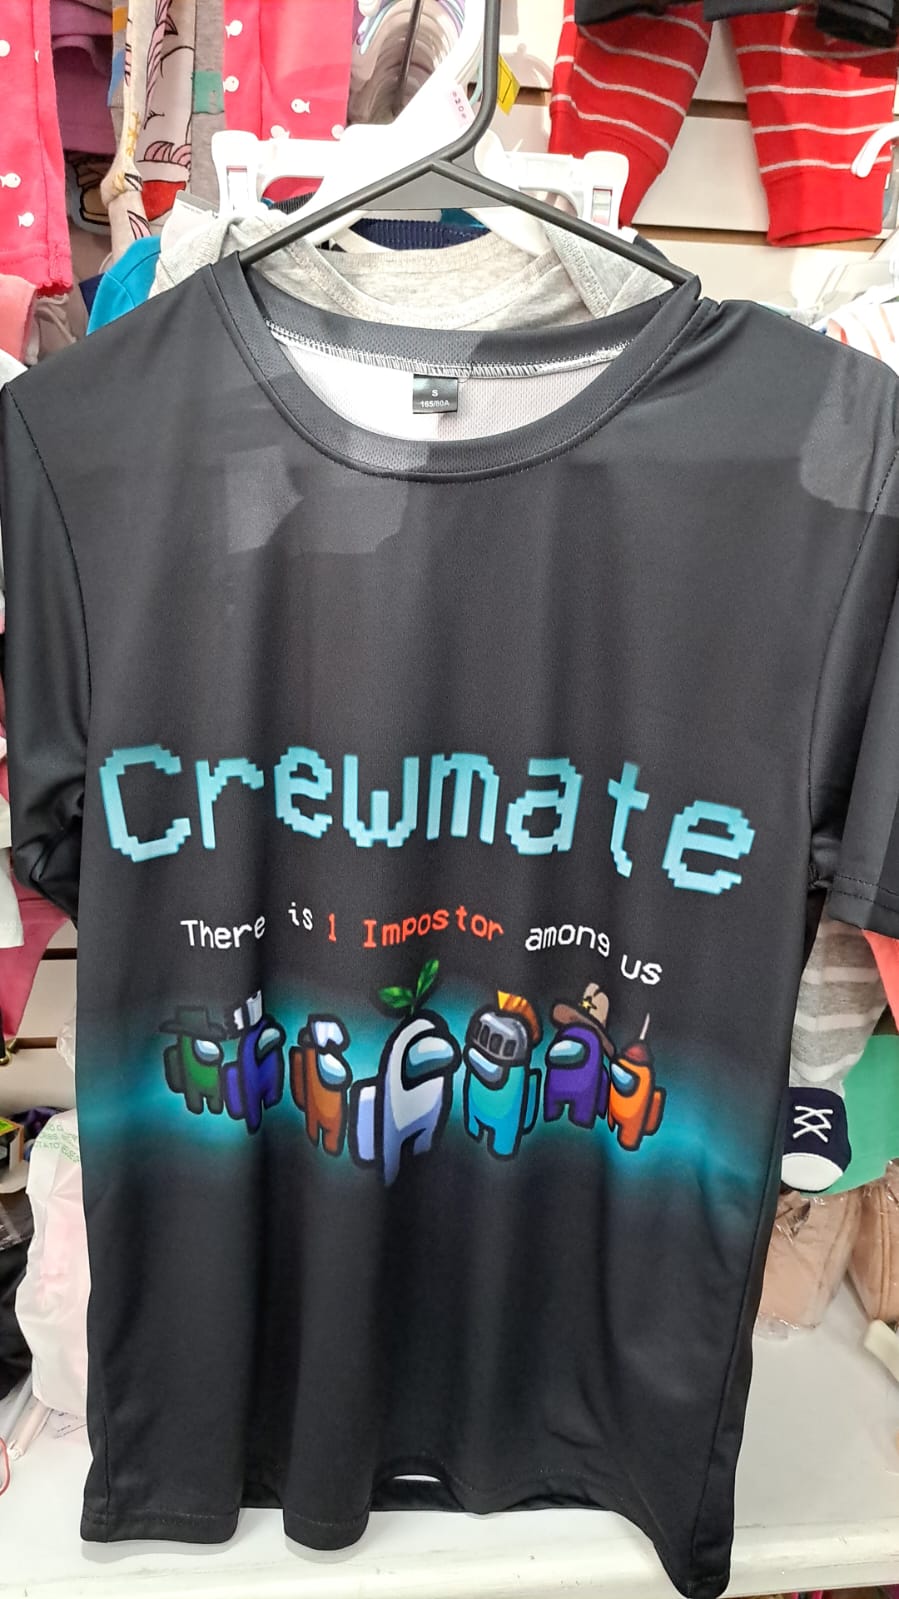 Sale among us Crewmate Tshirt